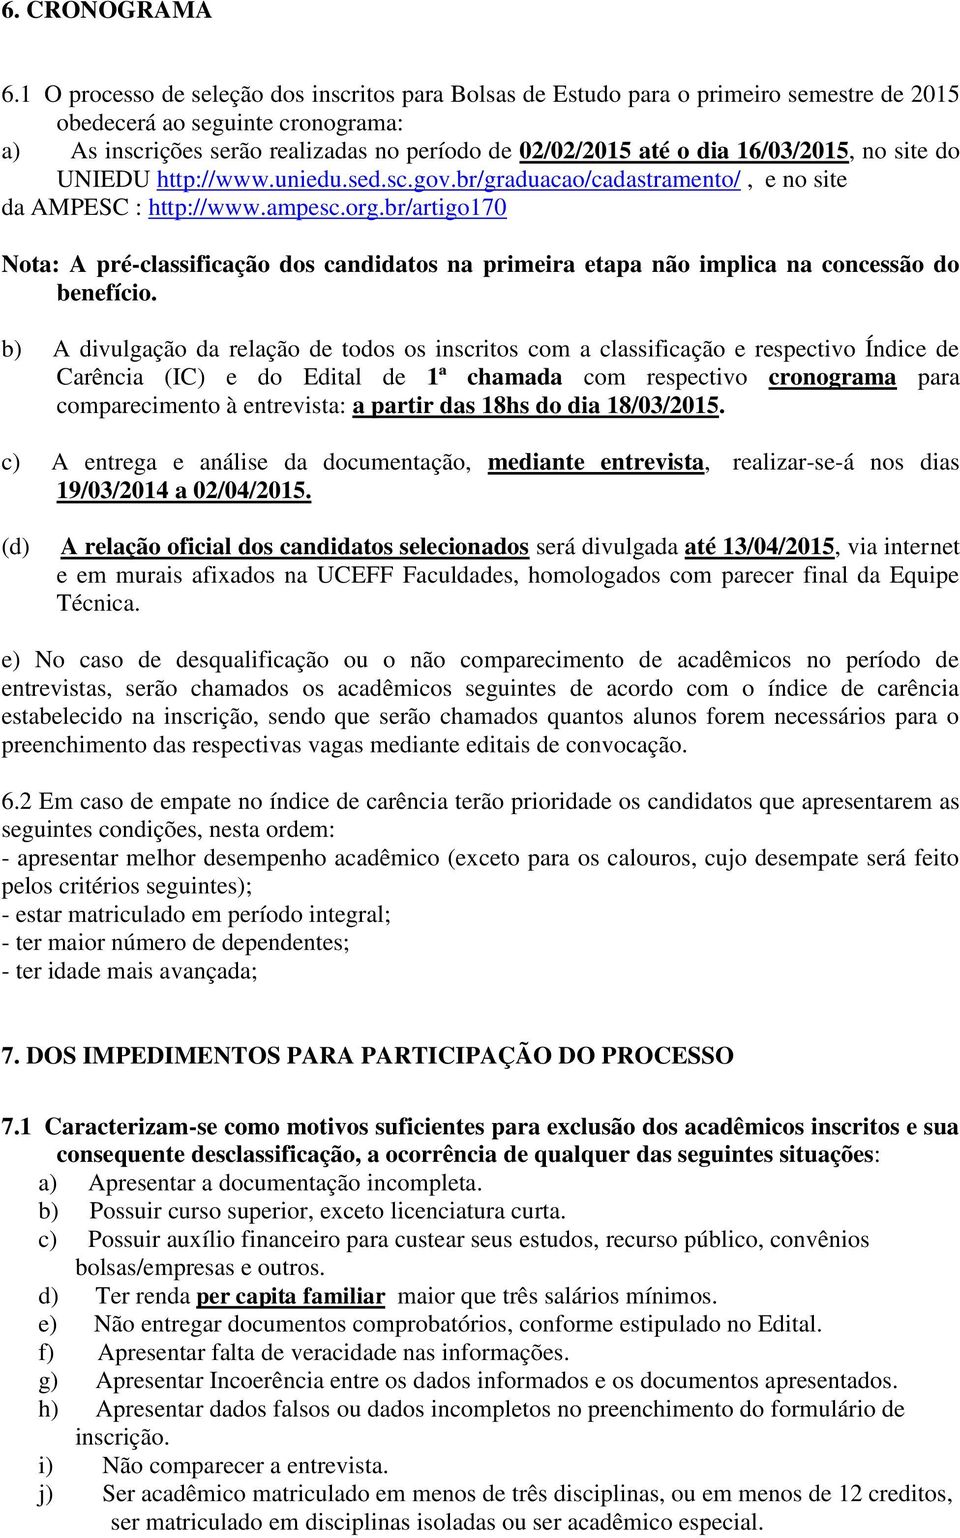 16/03/2015, no site do UNIEDU http://www.uniedu.sed.sc.gov.br/graduacao/cadastramento/, e no site da AMPESC : http://www.ampesc.org.